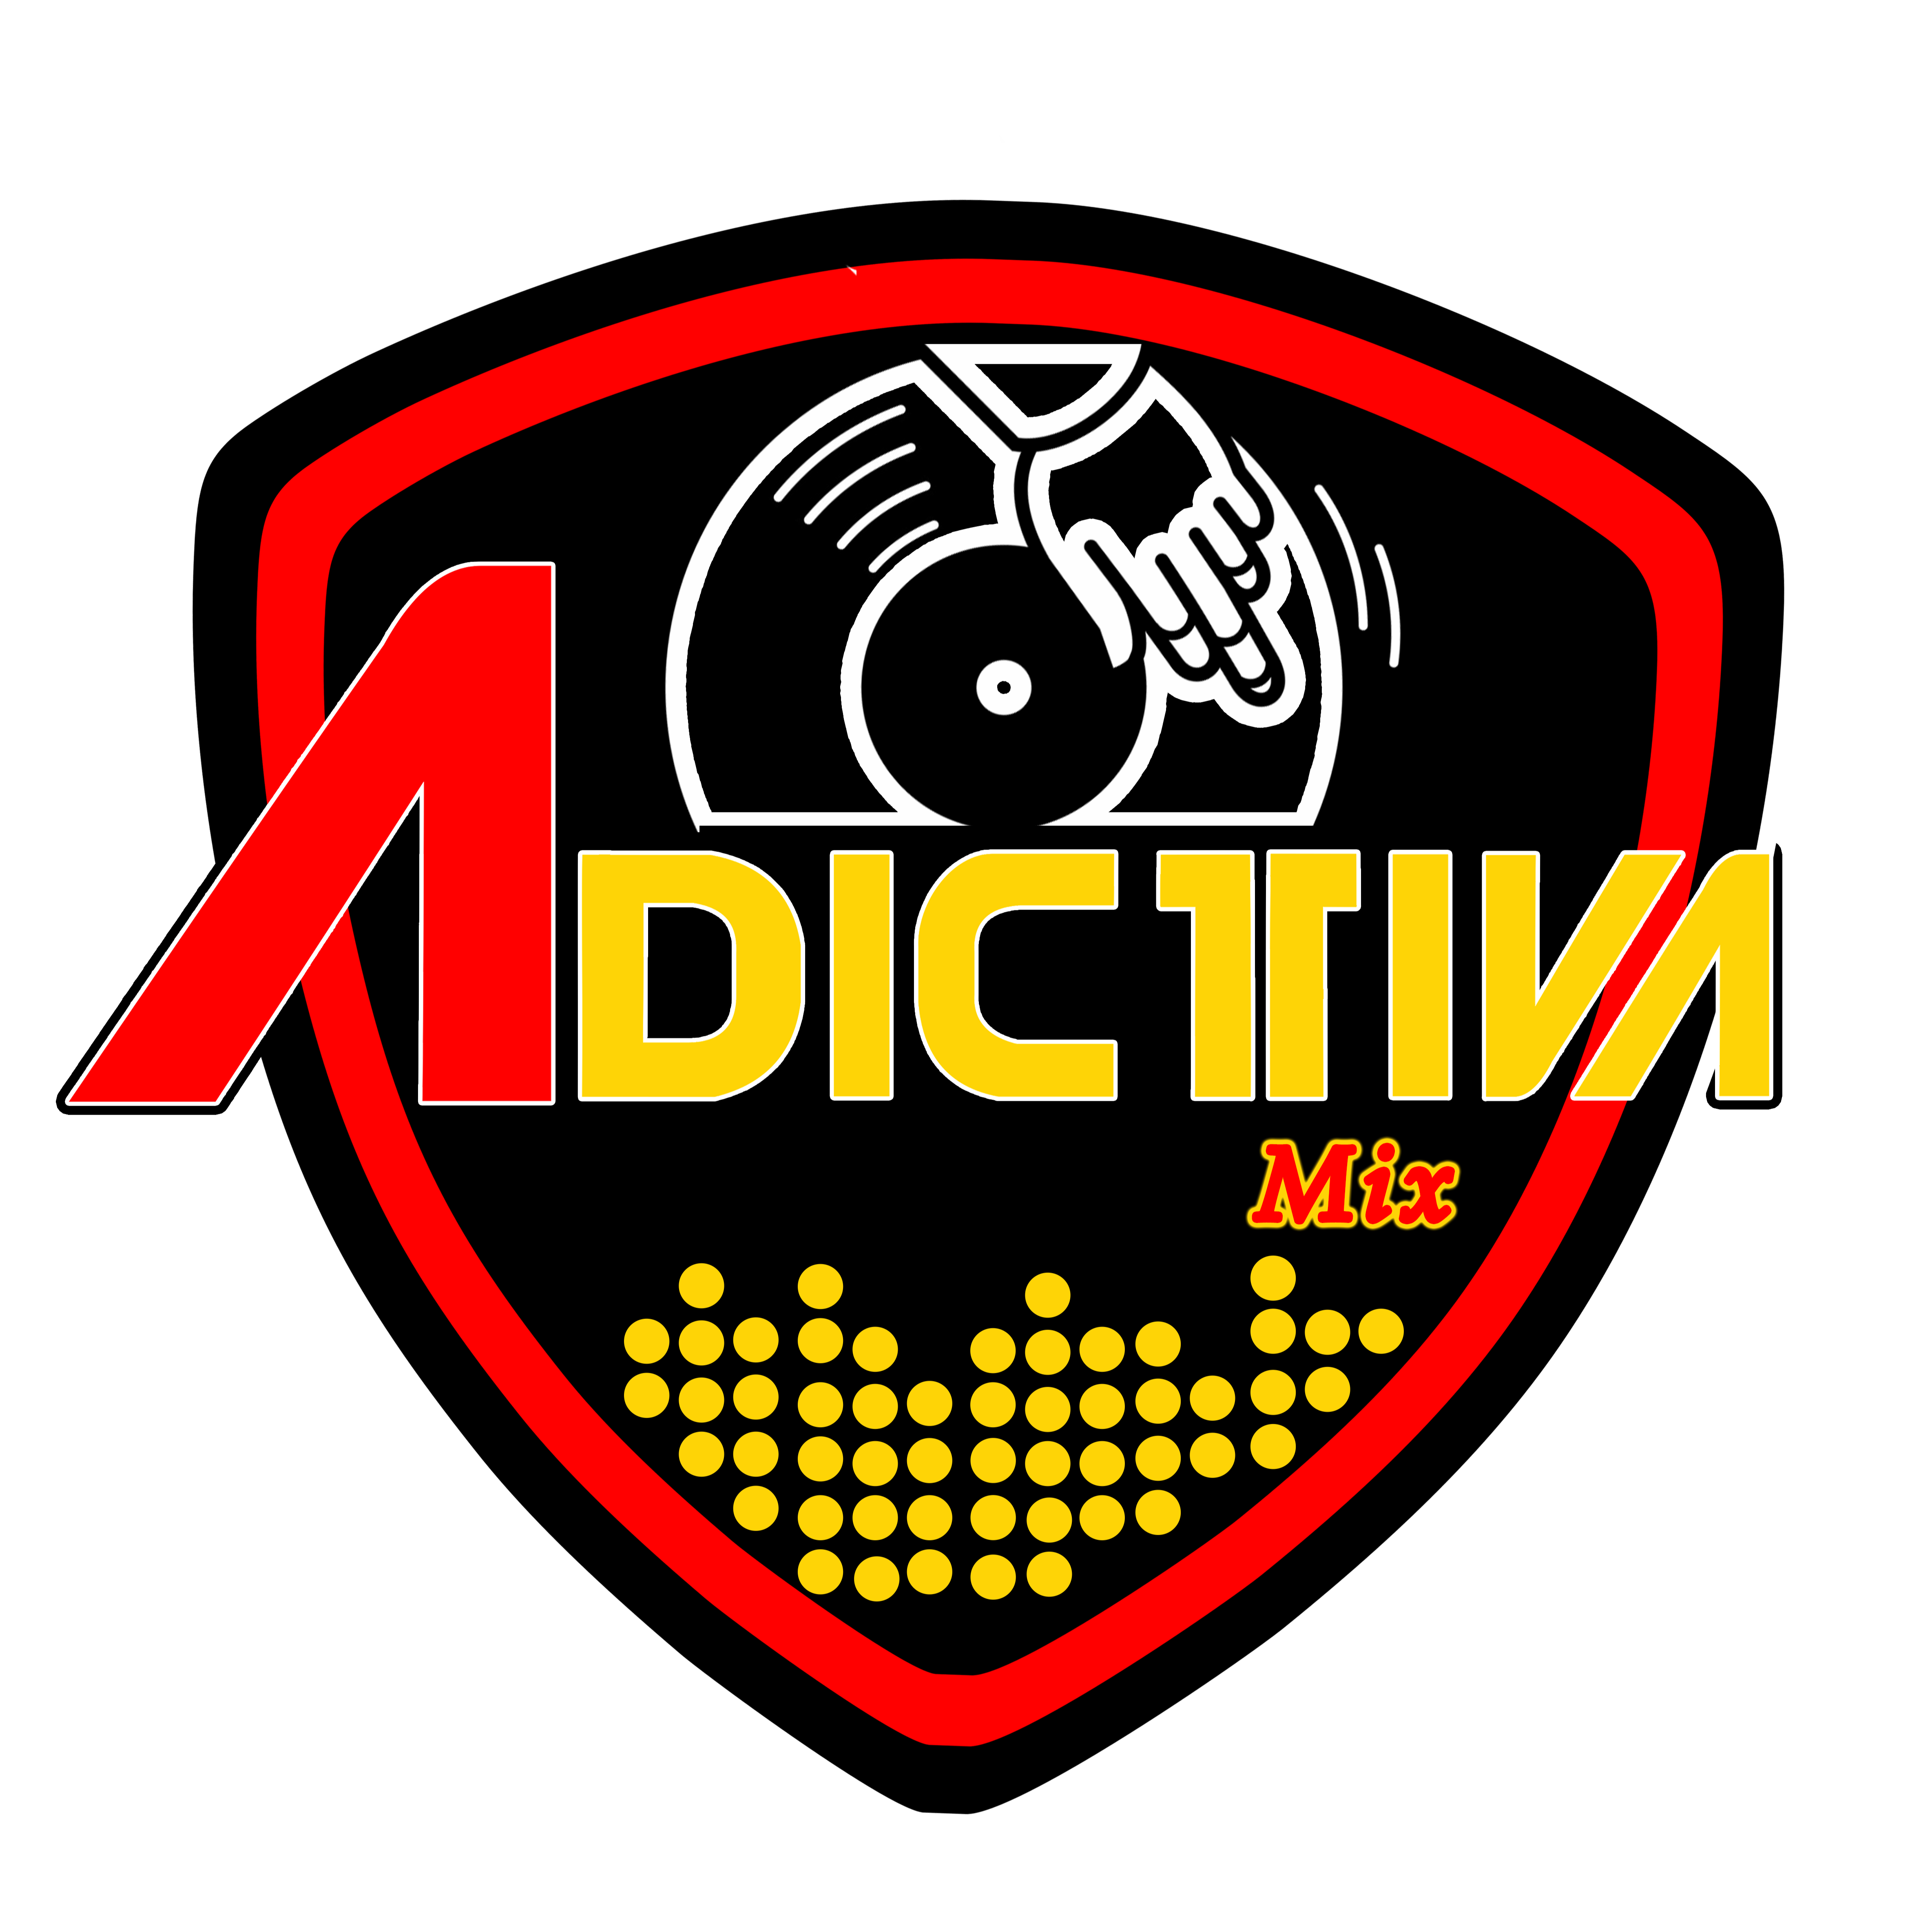 Adictiva Mix